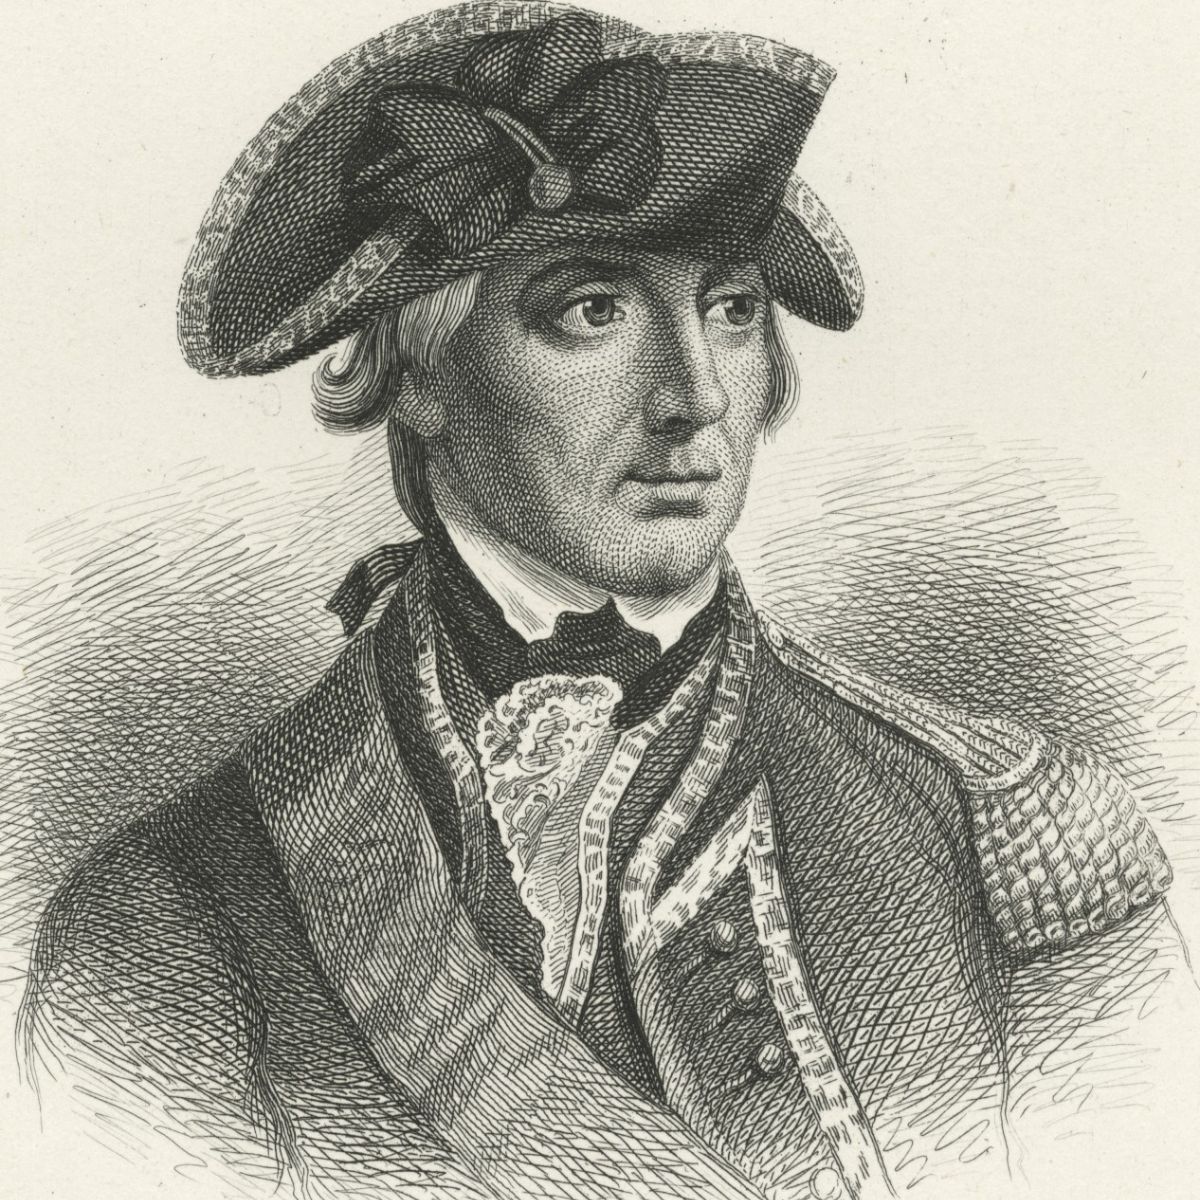 General William Howe